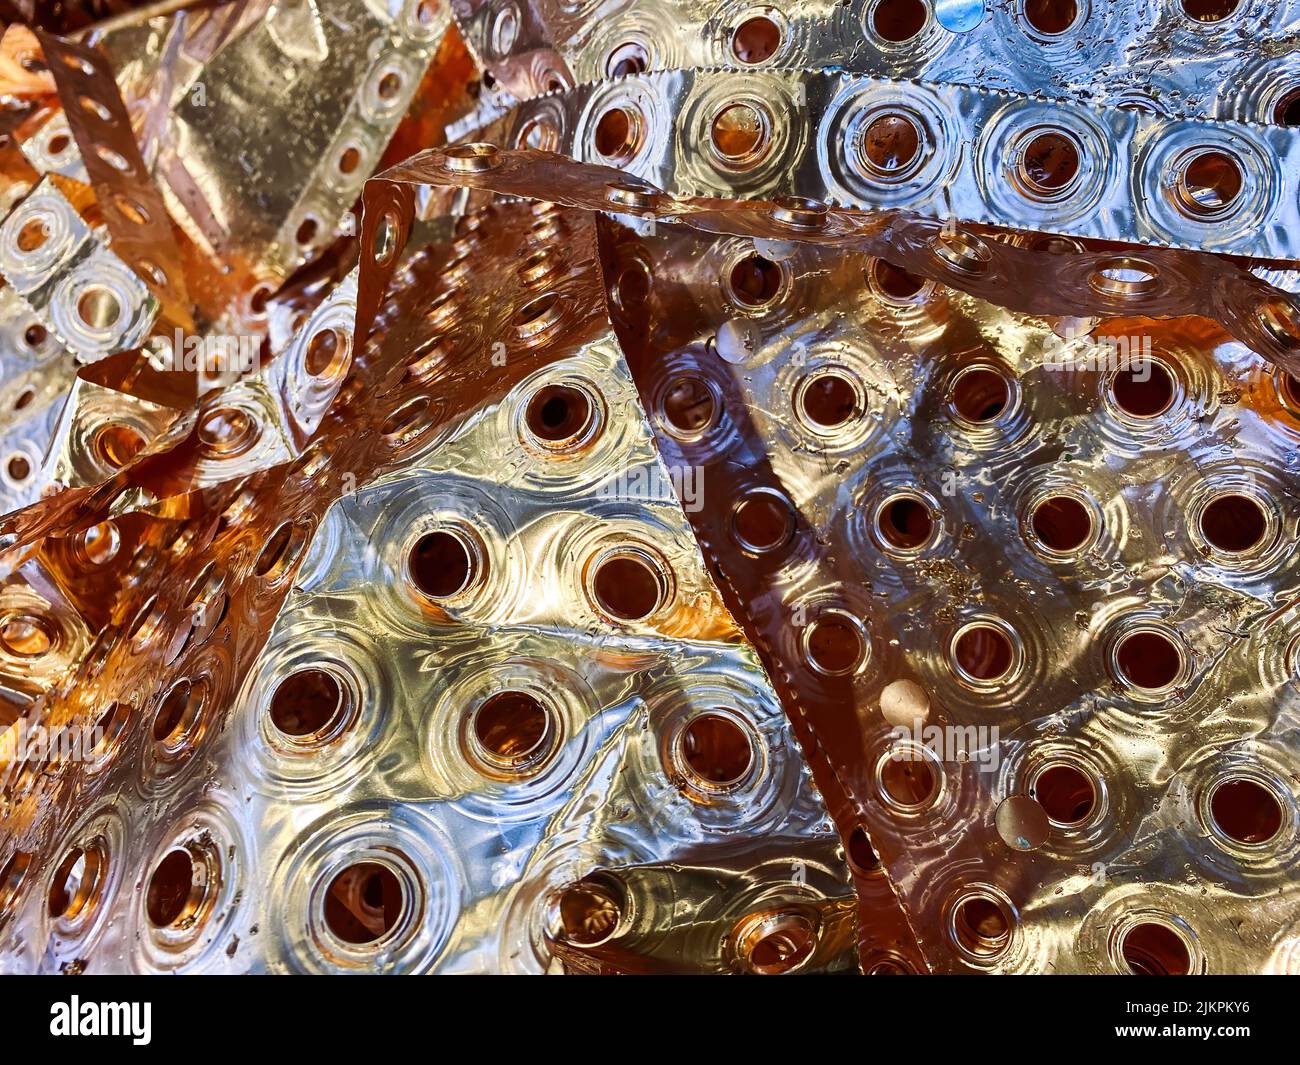 Ailettes de radiateur en cuivre boutures du processus de fabrication. Image de haute qualité. Banque D'Images